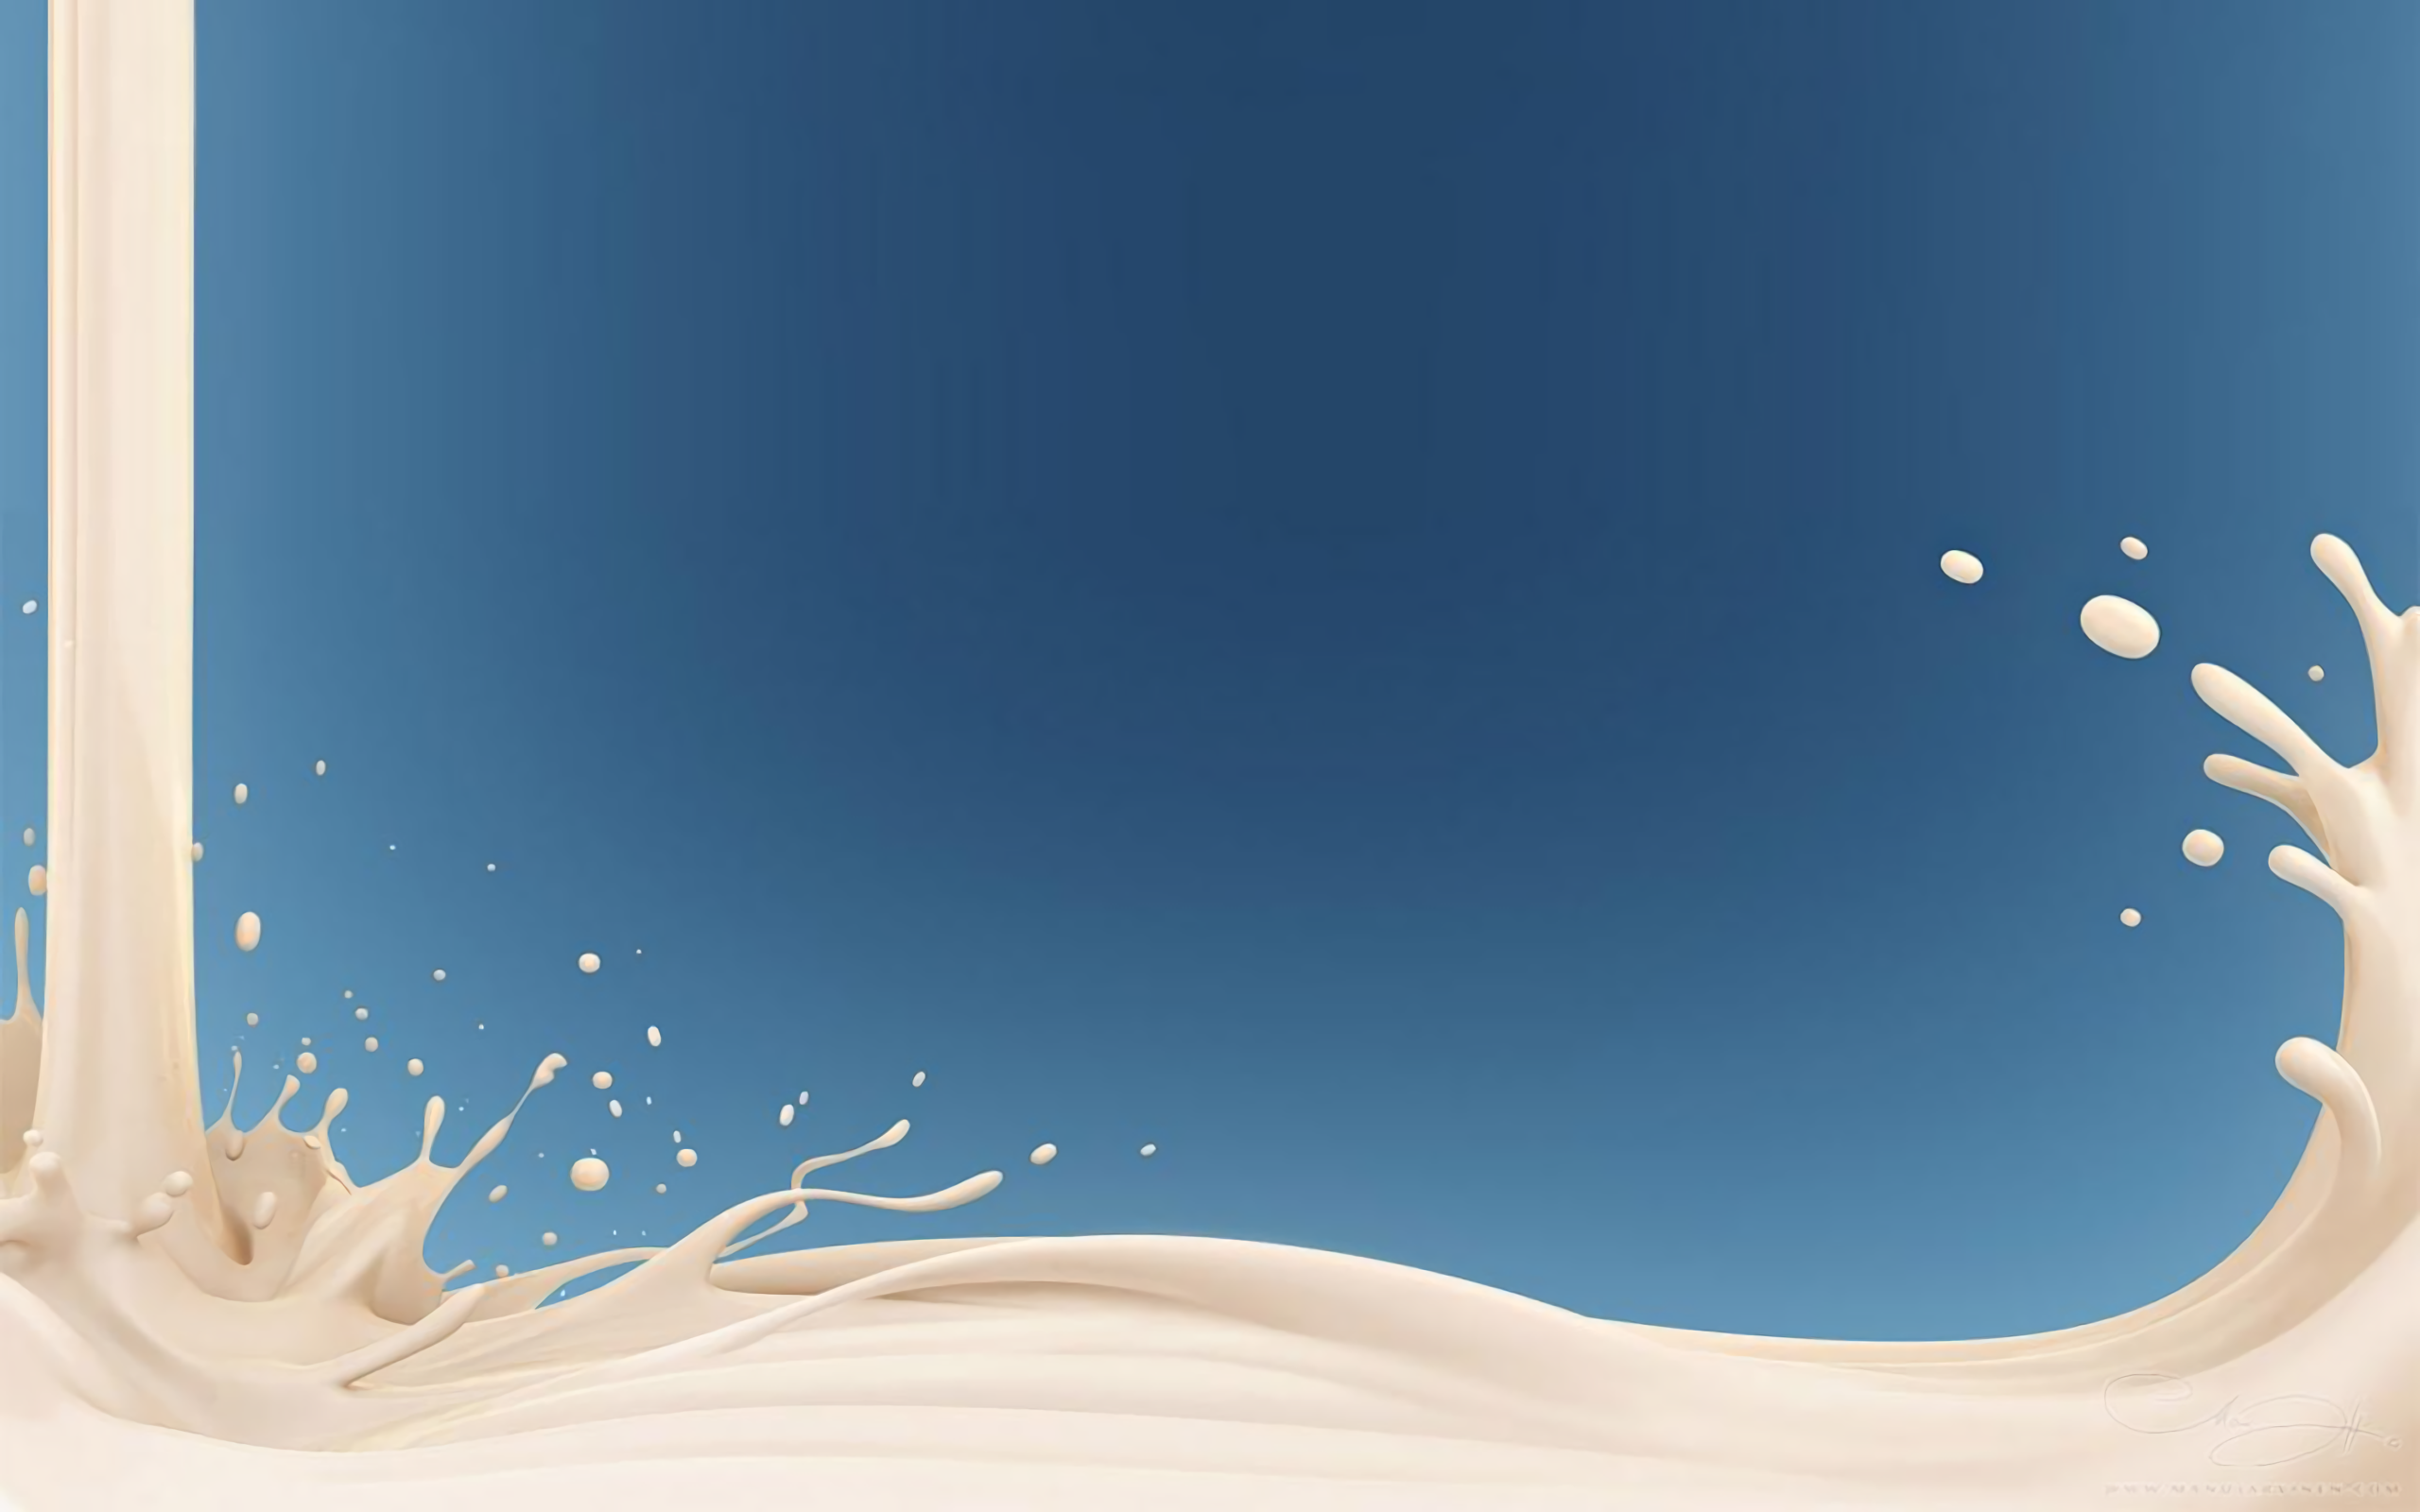 Milk HD Wallpaper Background Image 2560x1600 ID705823 2560x1600